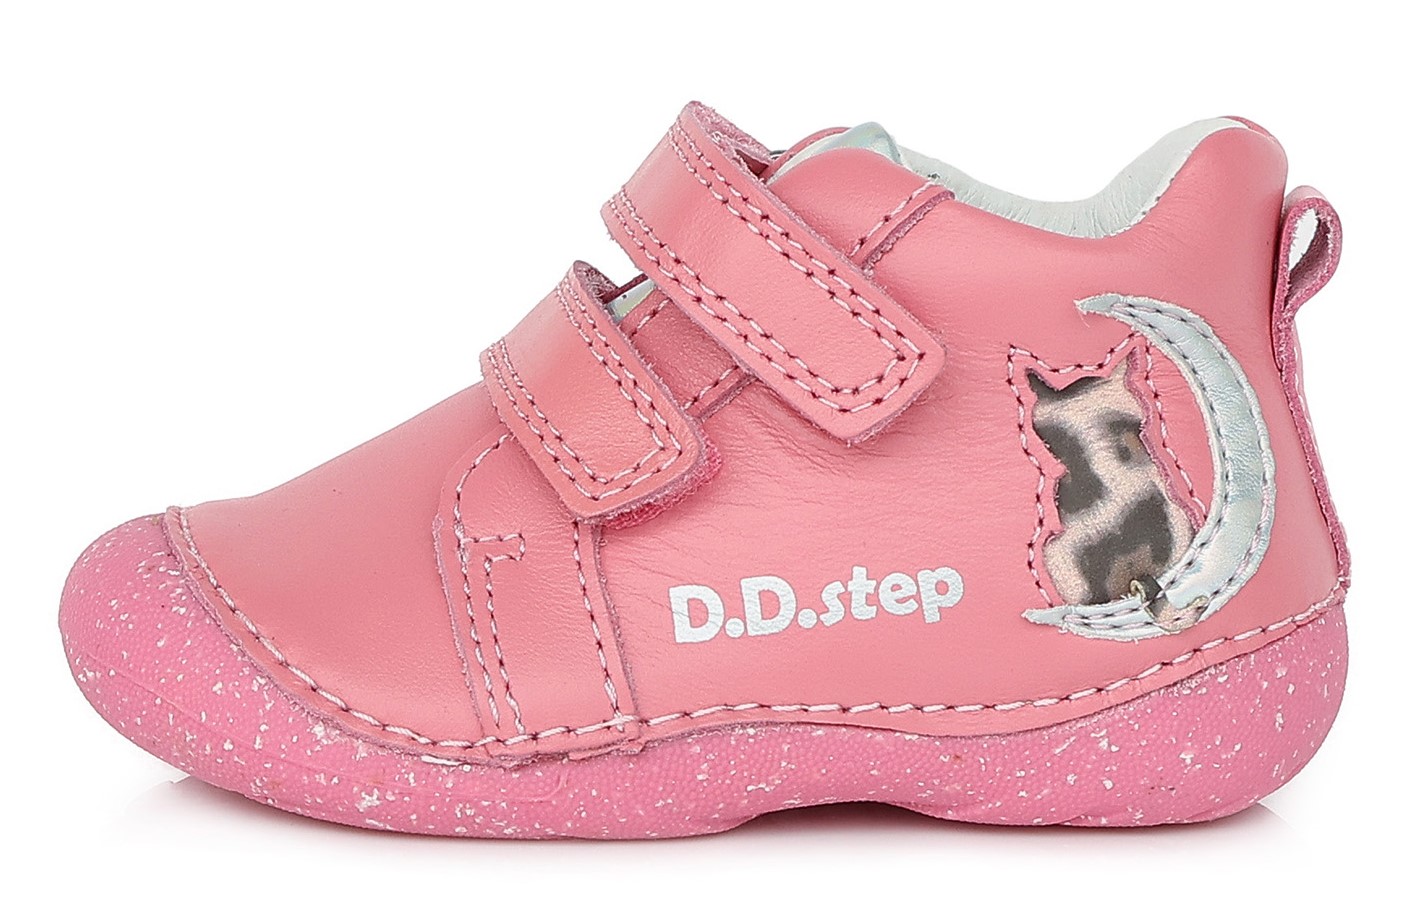 Dětské celoroční boty D.D.step 015-353 růžové Velikost: 21 (EU)